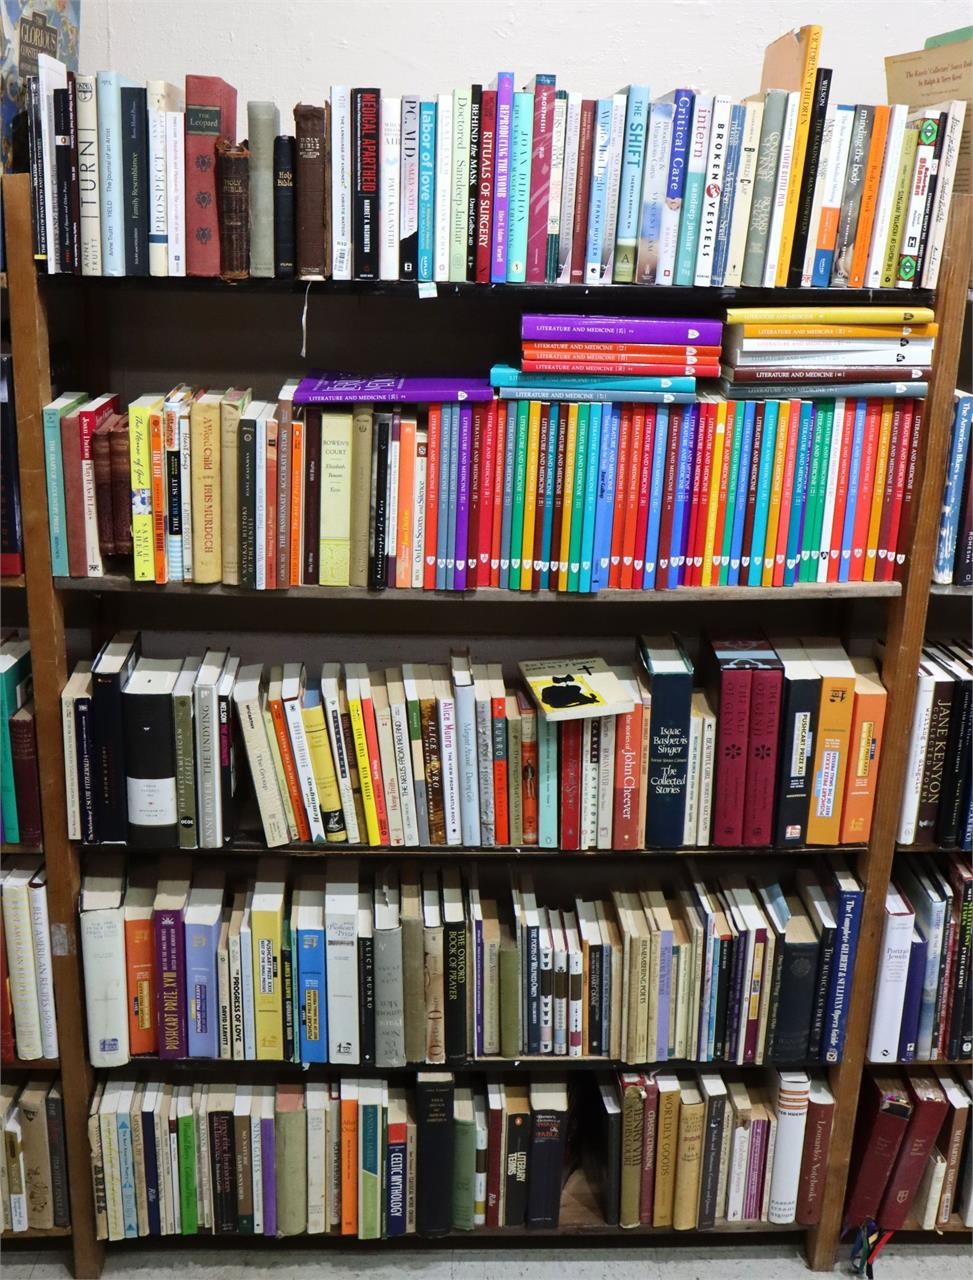 (5) Shelves of Books